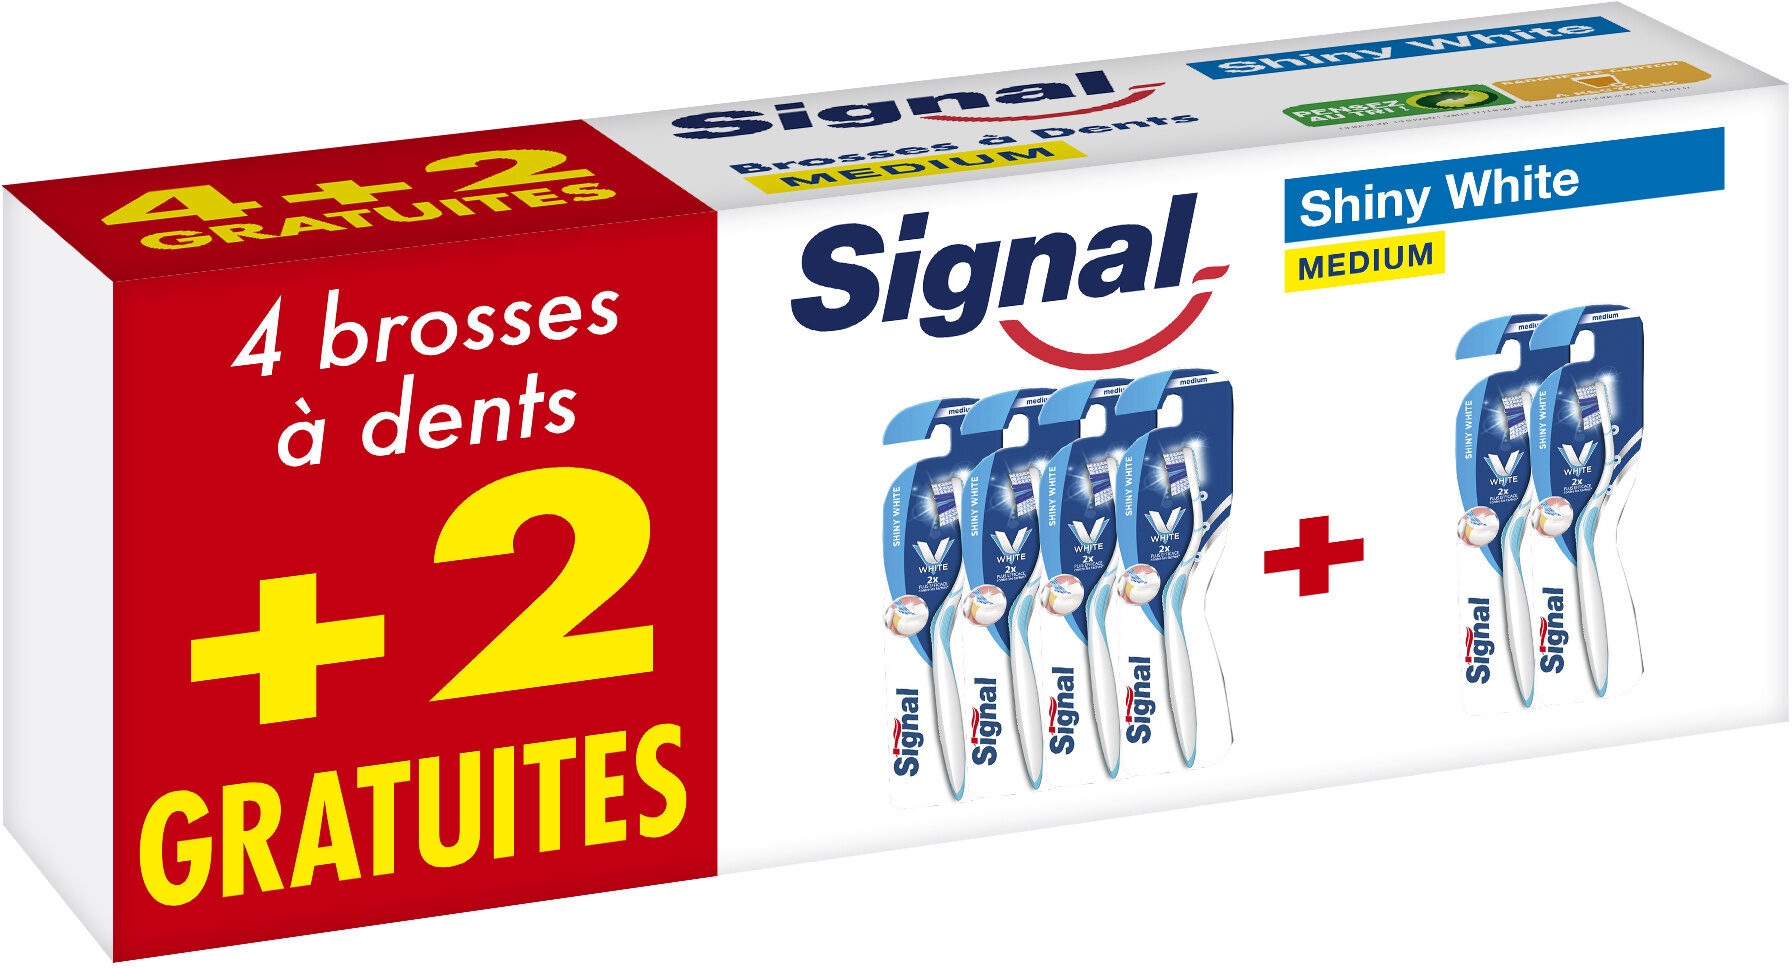 Signal Brosse à Dents Shiny White Medium Lot de 6(4+2 Gratuits) - Produit - fr